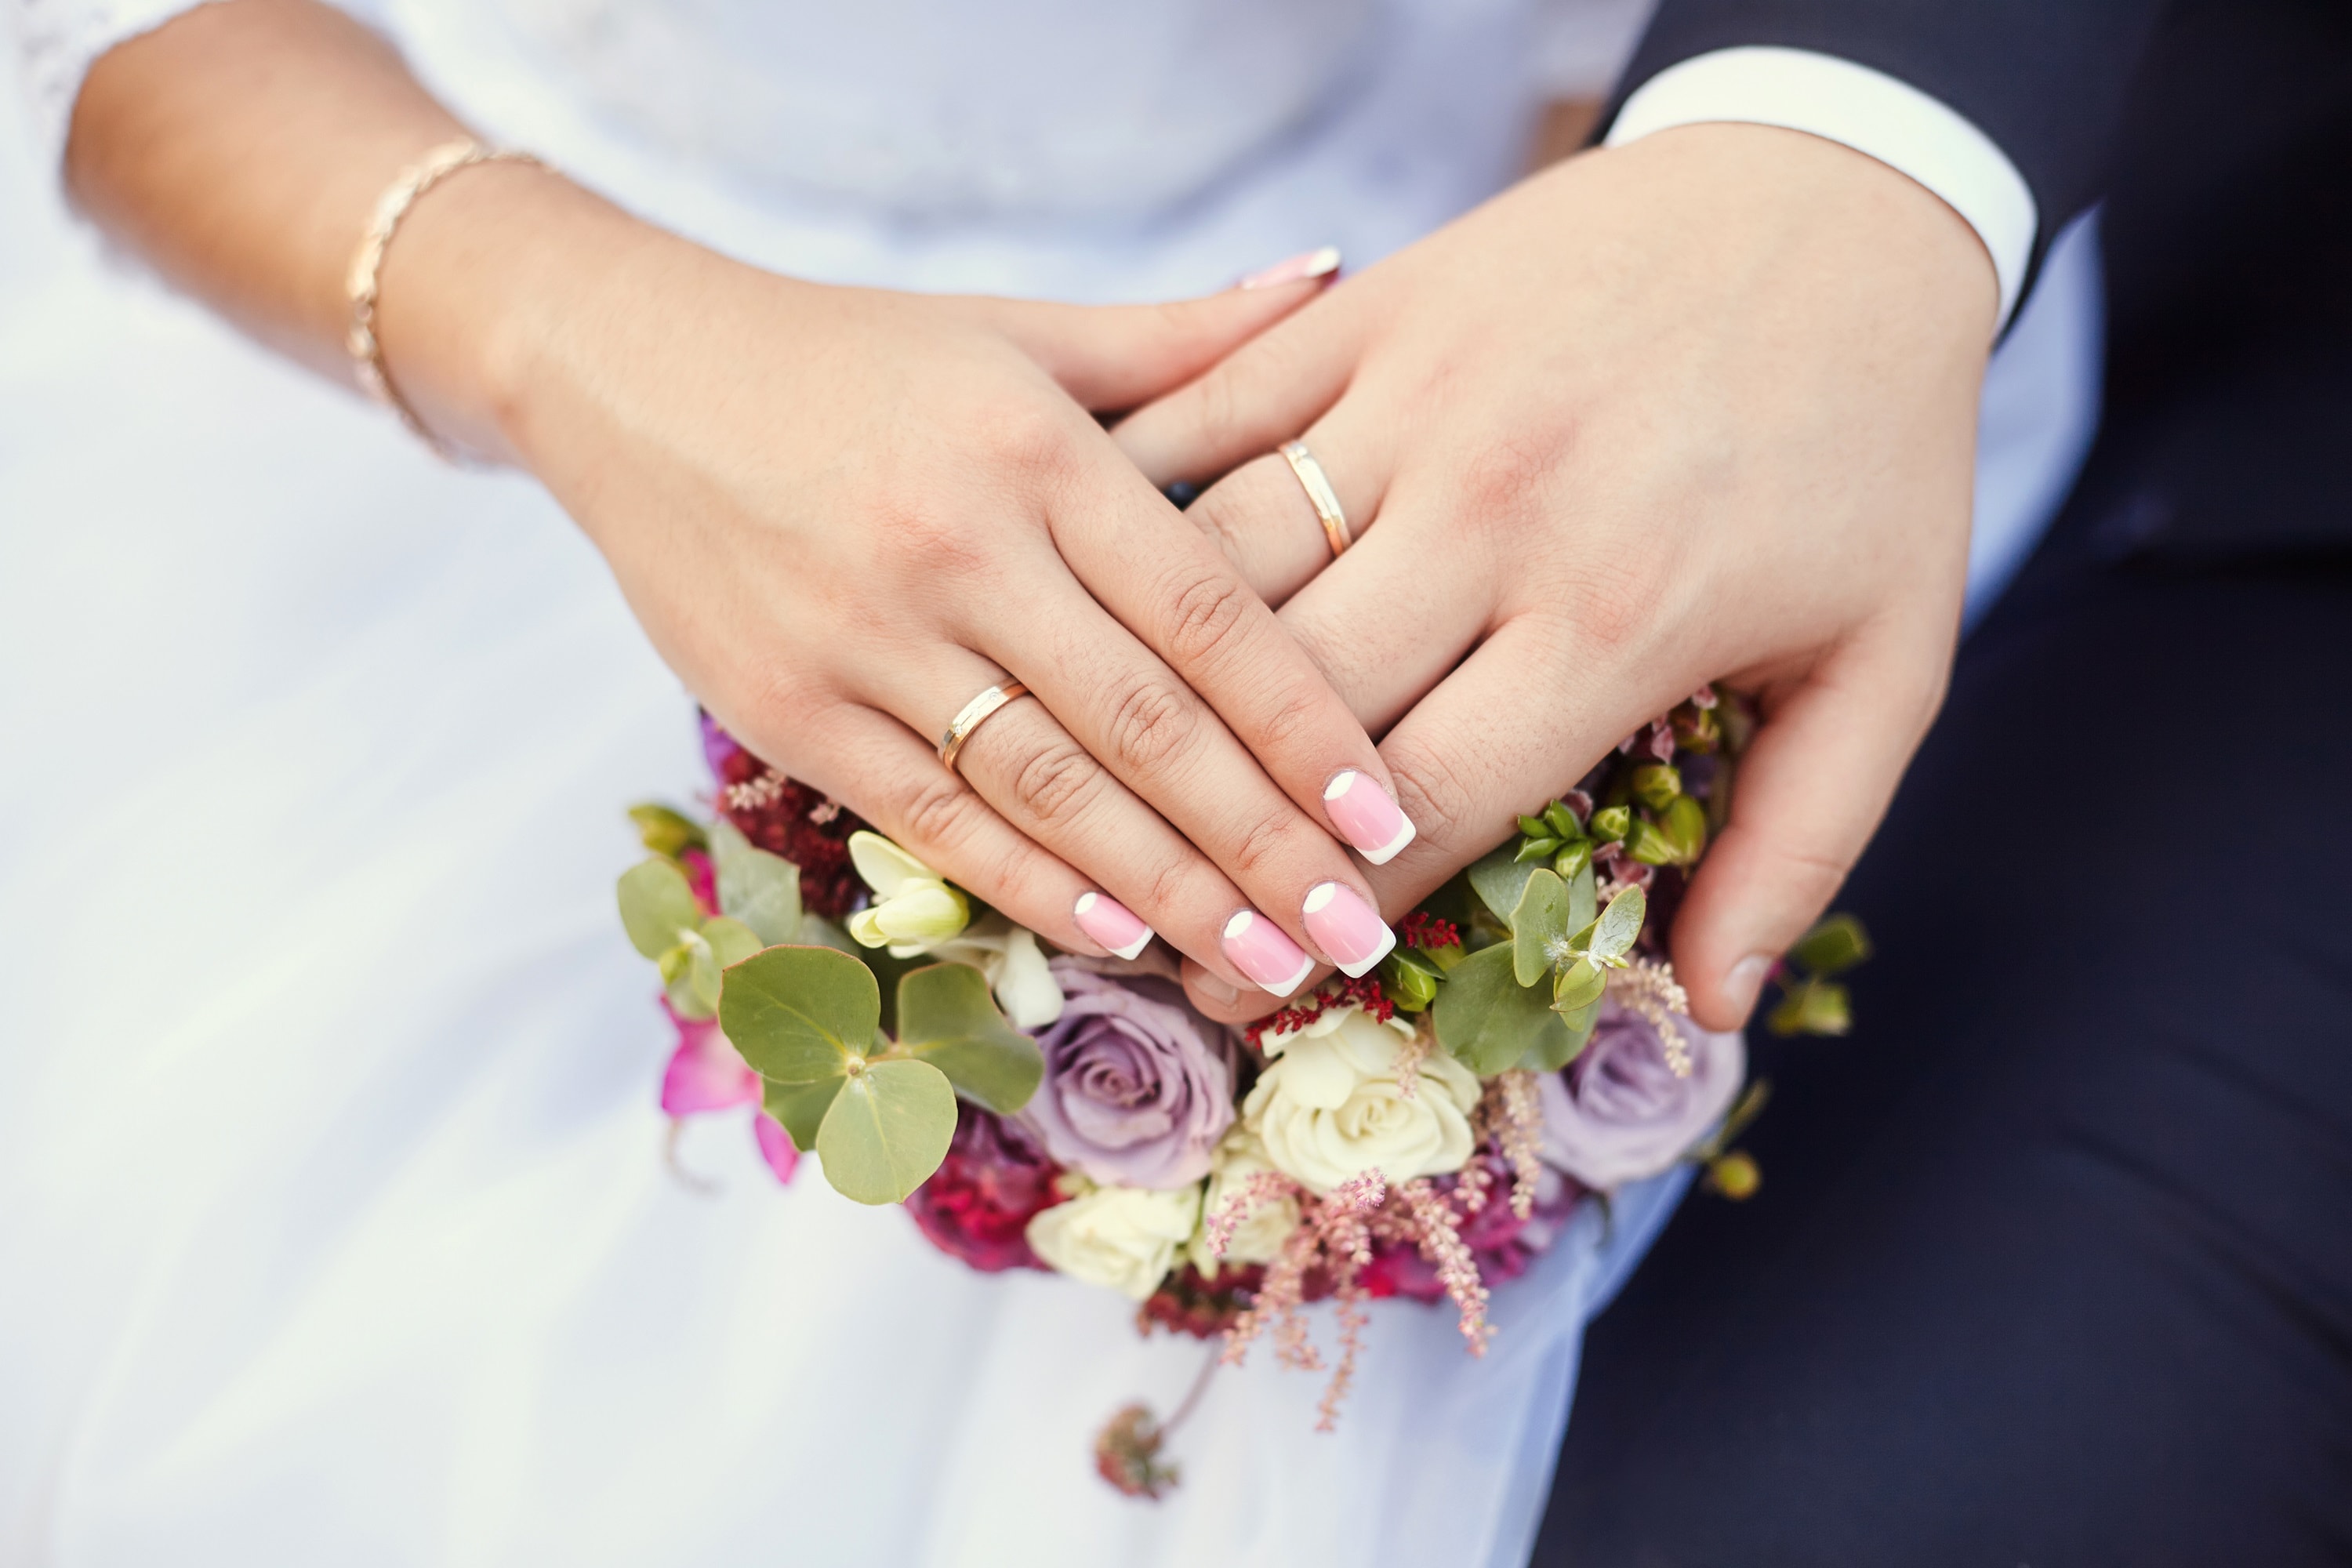 О скором замужестве. Невеста на руках у жениха. Замужество. Удачное замужество. Обручальные кольца для карты желаний.